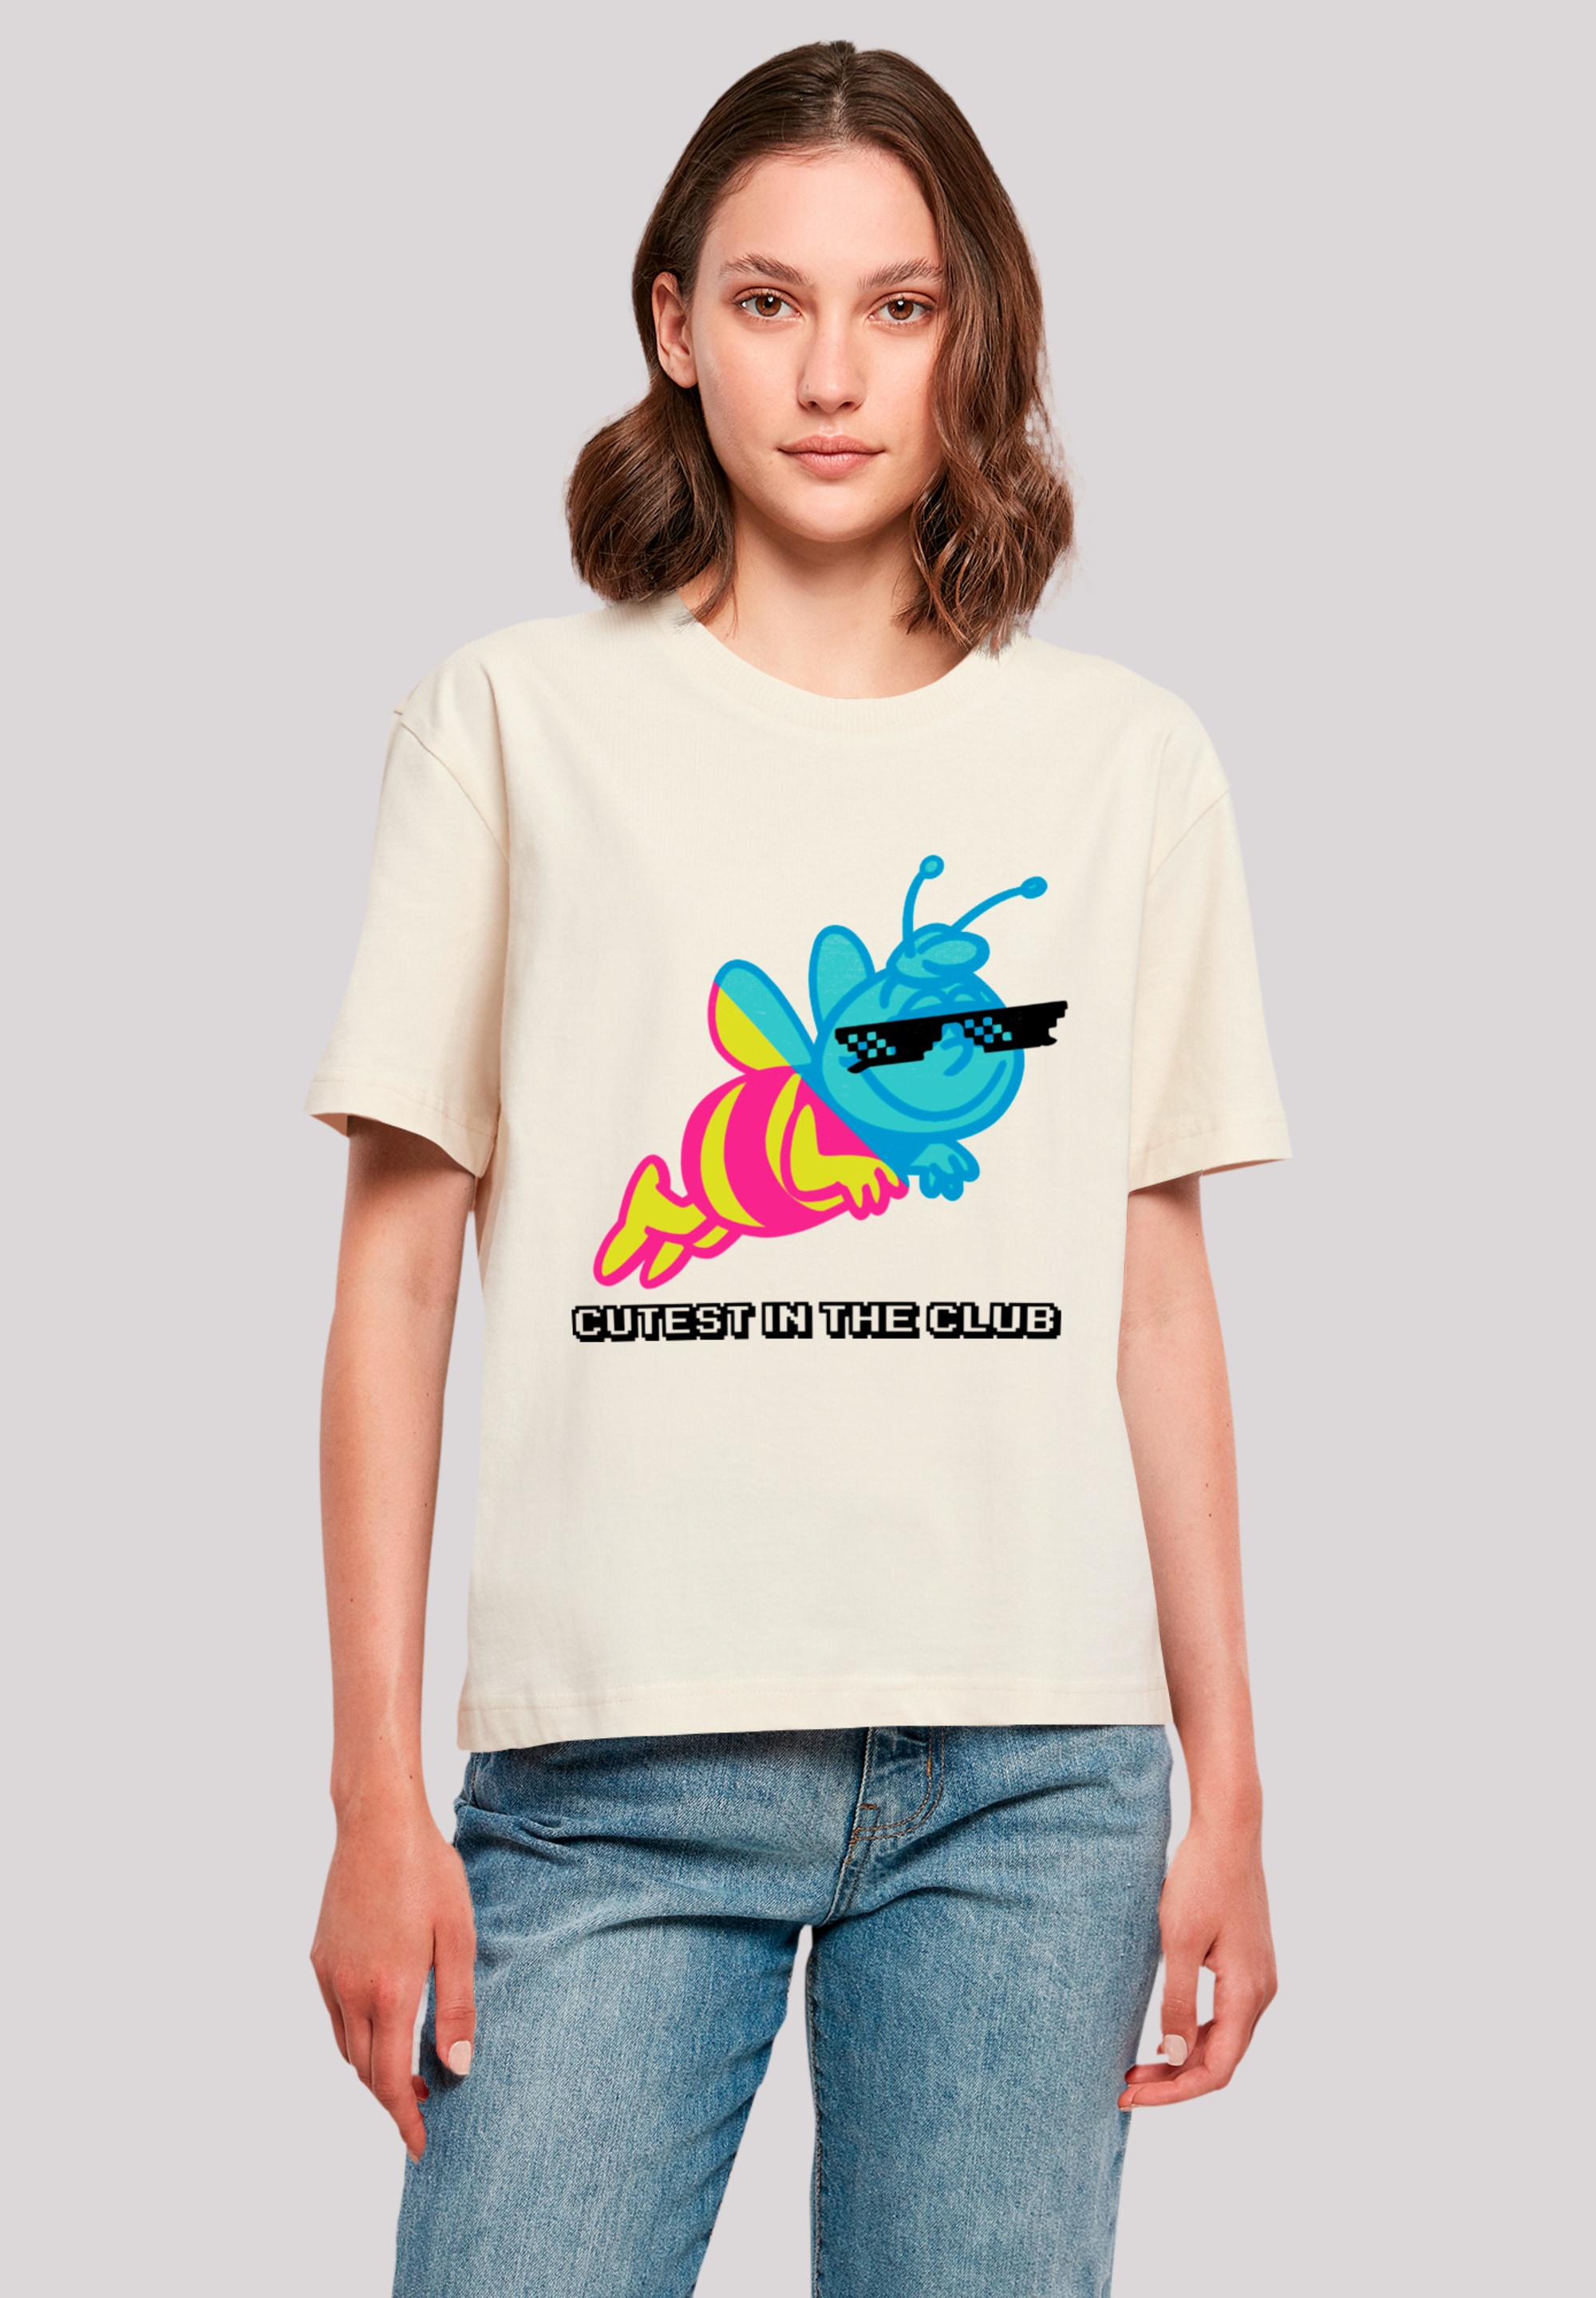 F4NT4STIC T-Shirt »Die Biene Maja Cutest In Club Heroes of Childhood«, Nostalgie, Retro, Heroes of Childhood